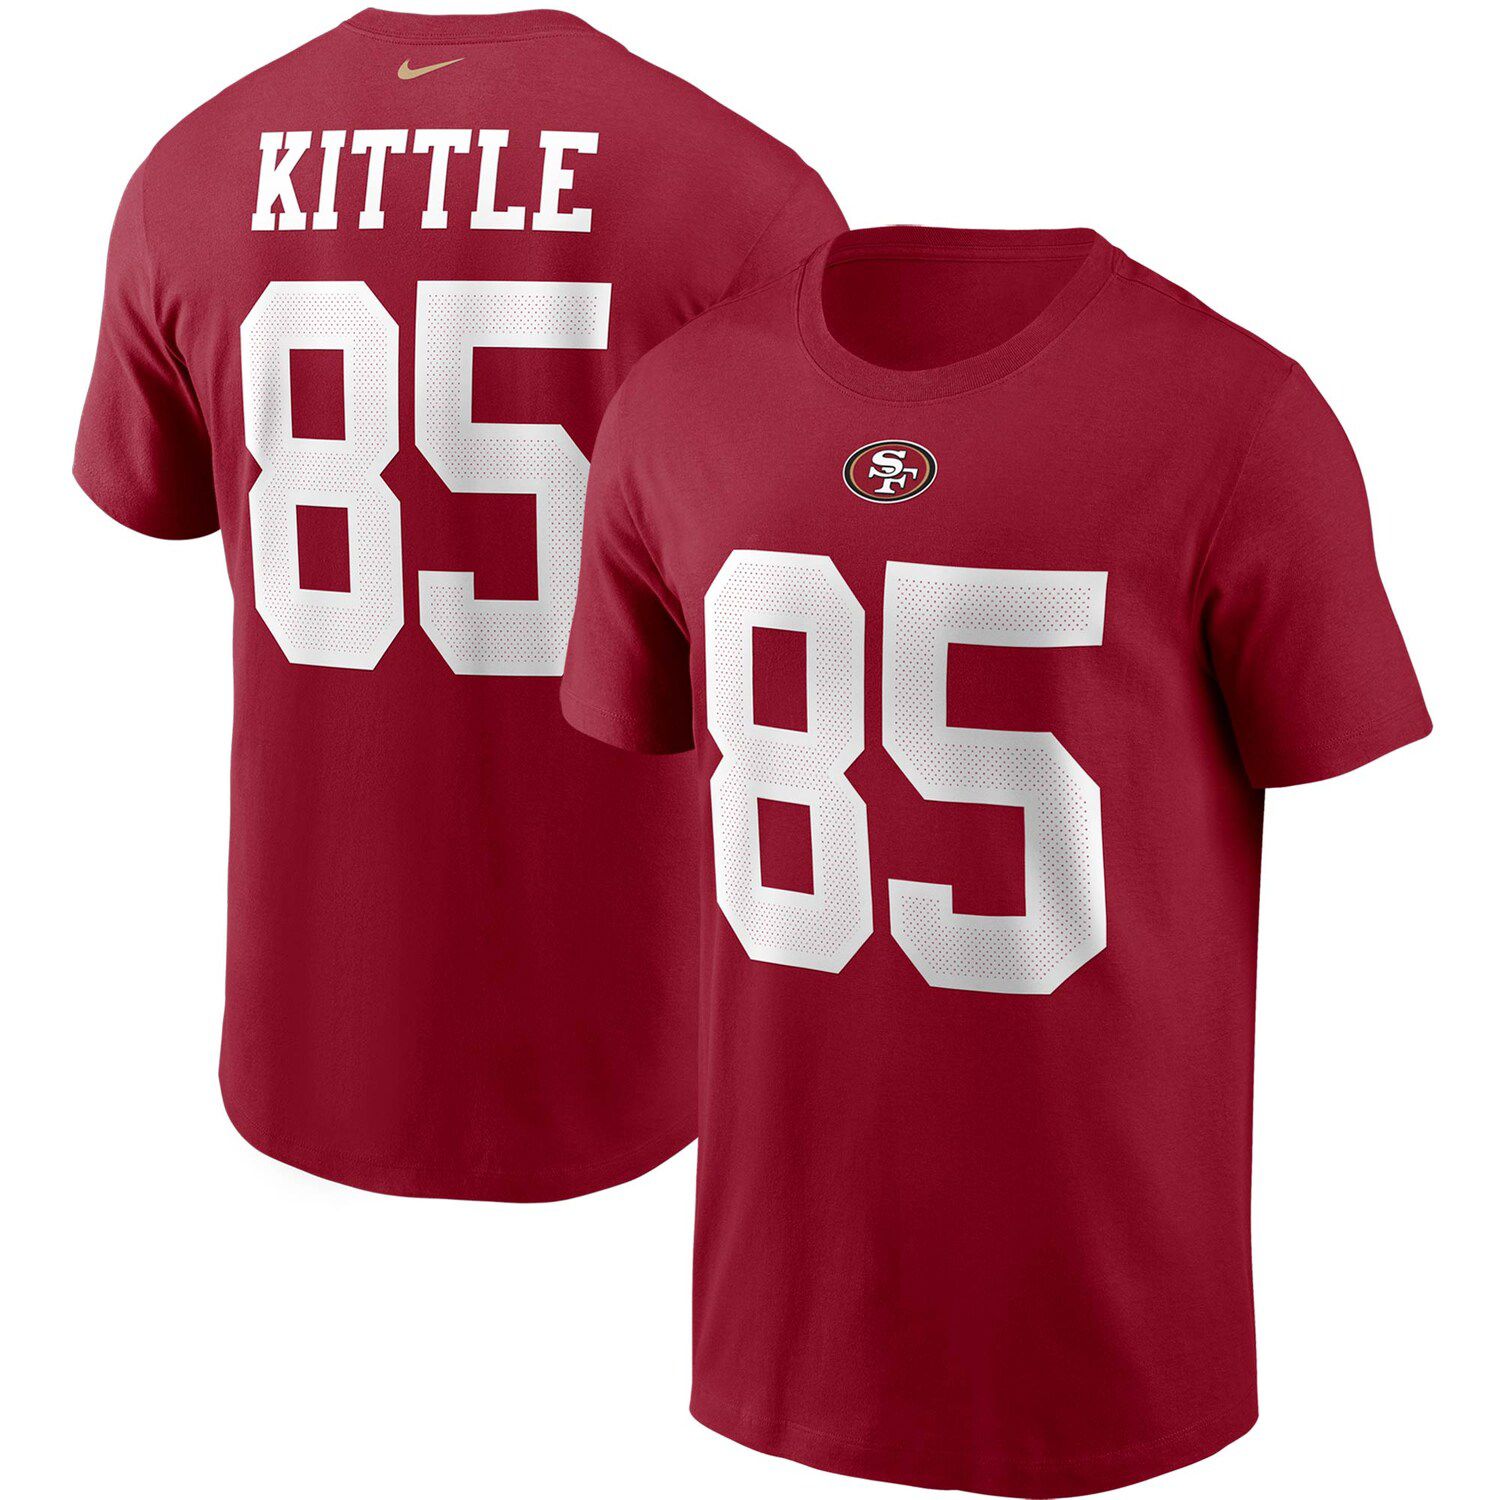 kittle shirt jersey